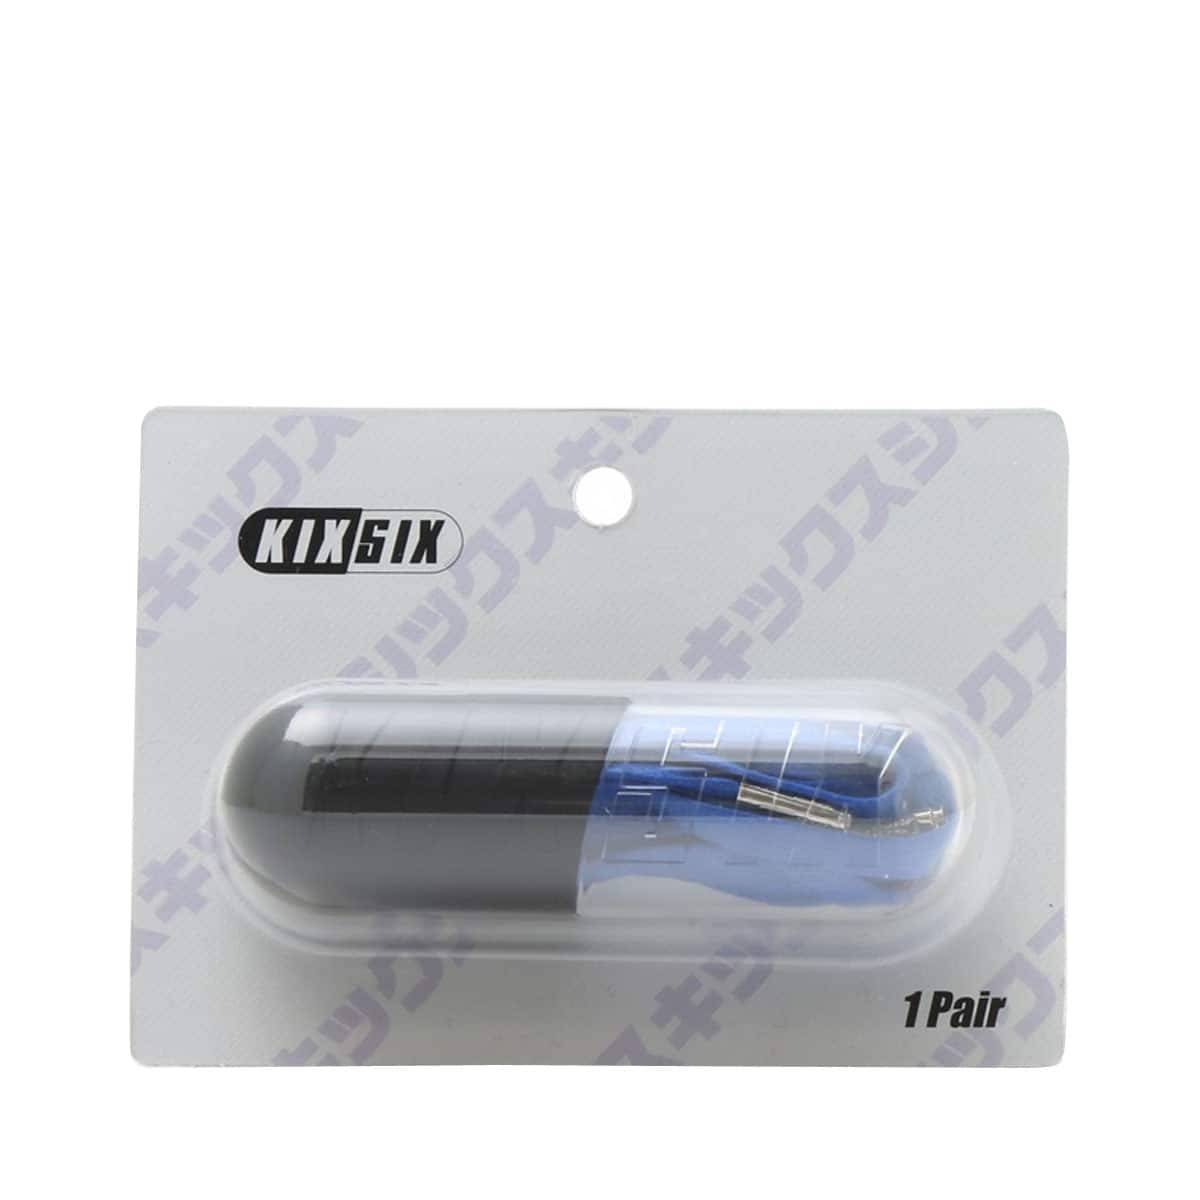 Kixsix darkpurple waxed shoelace capsule